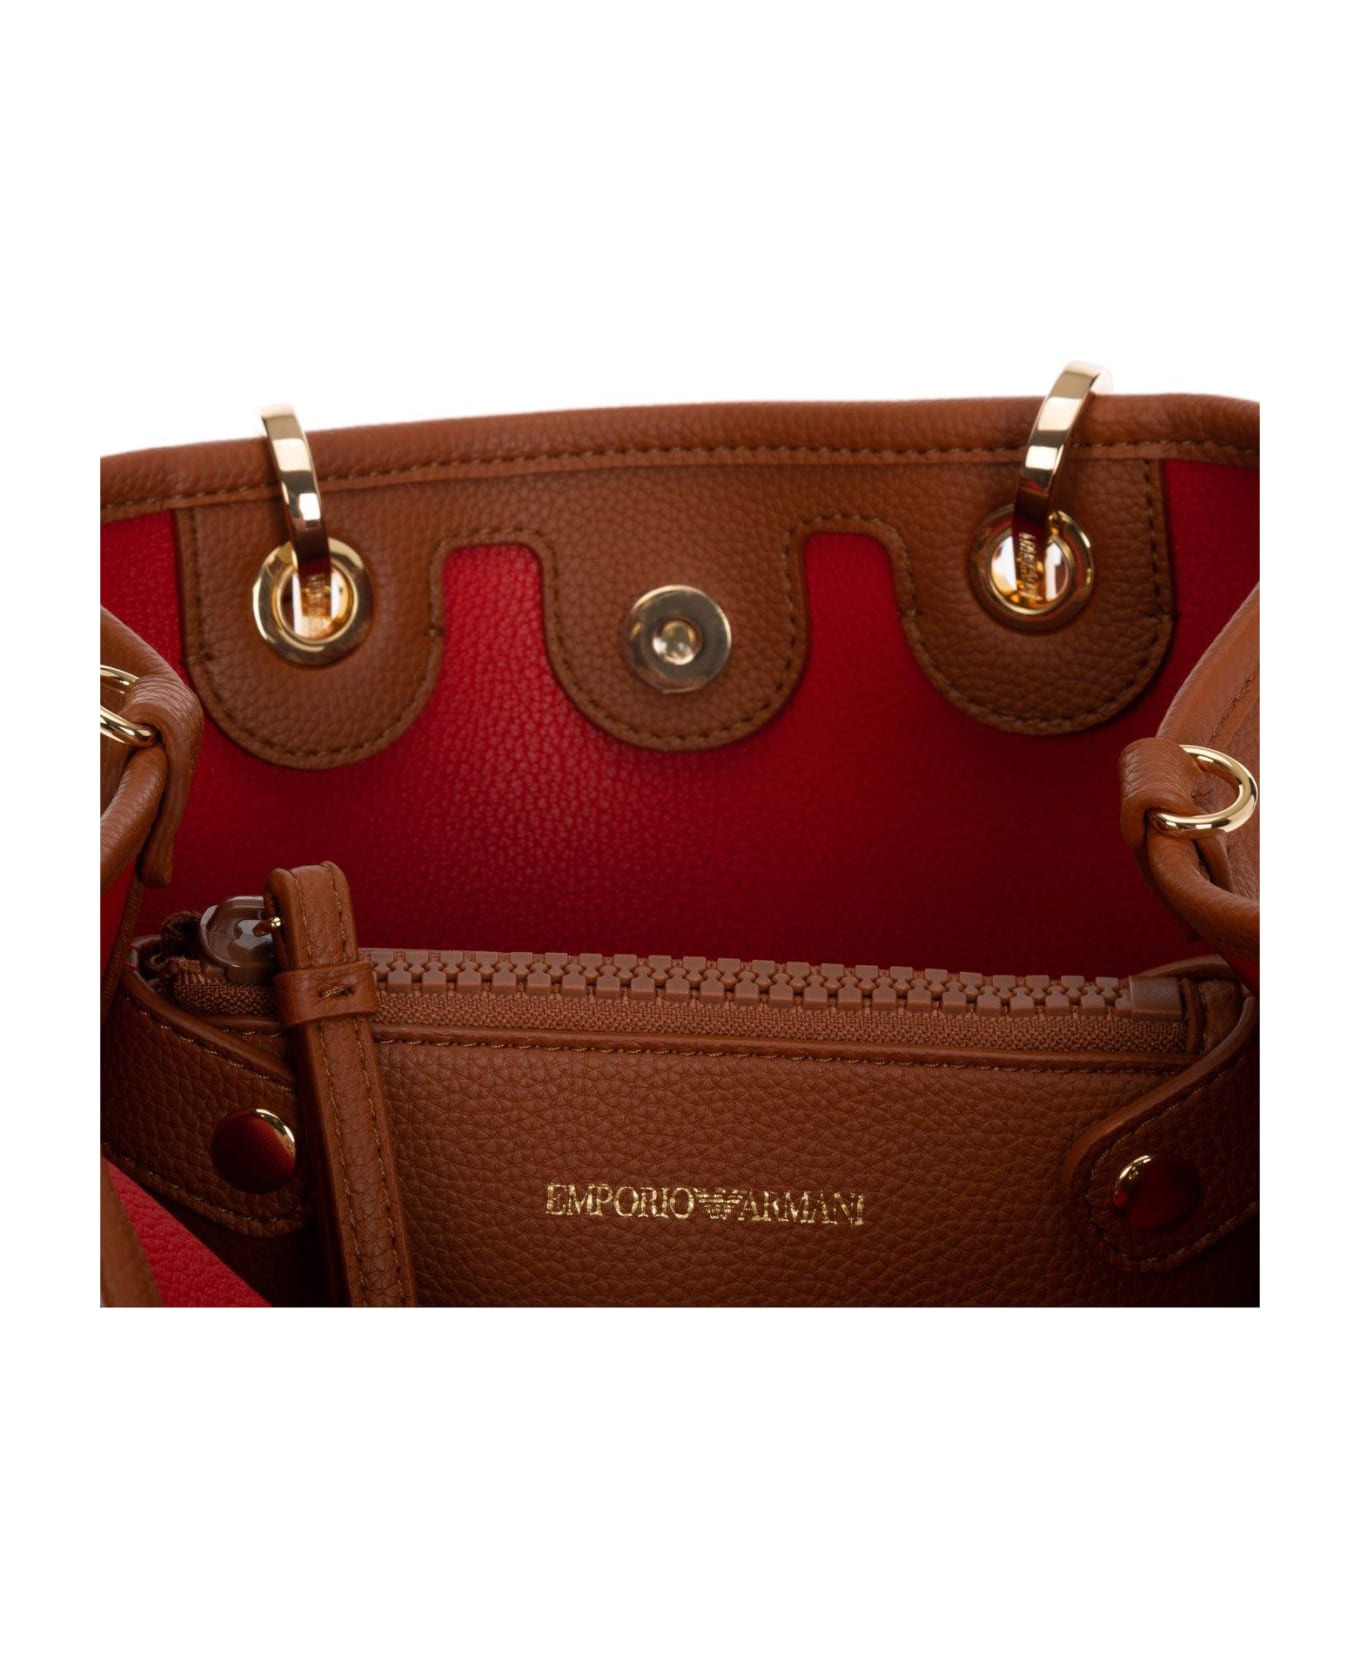 Emporio Armani Logo Detailed Handbag - Cuoio/rosso